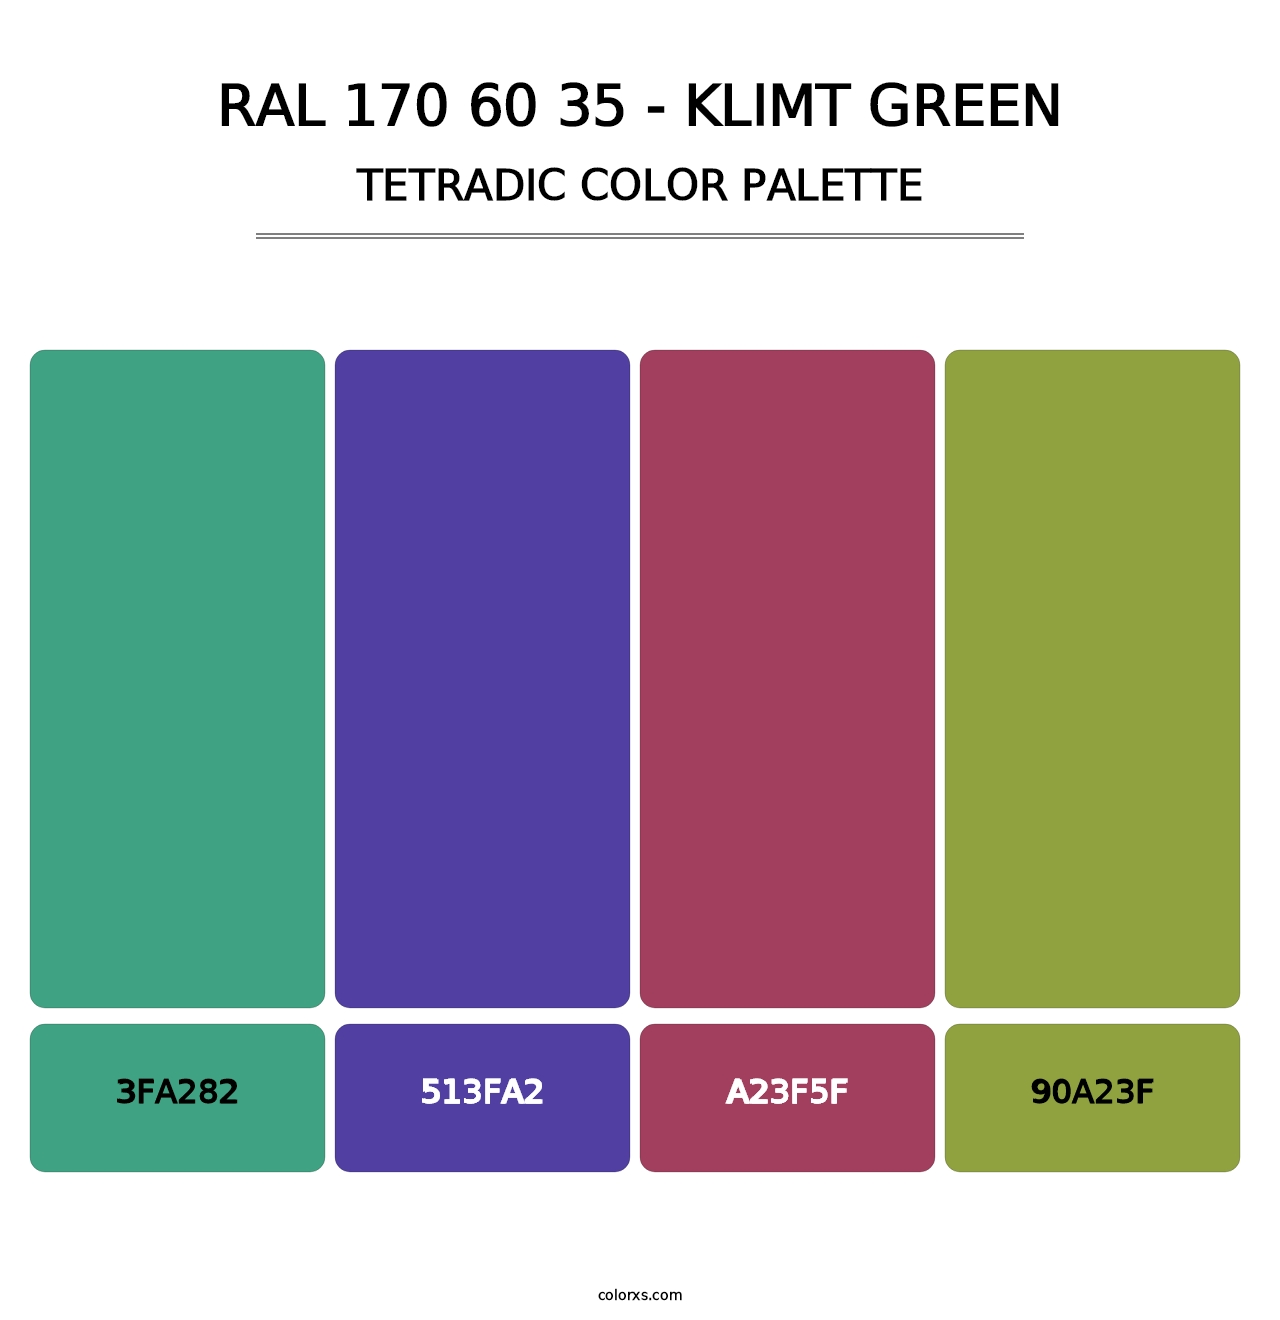 RAL 170 60 35 - Klimt Green - Tetradic Color Palette